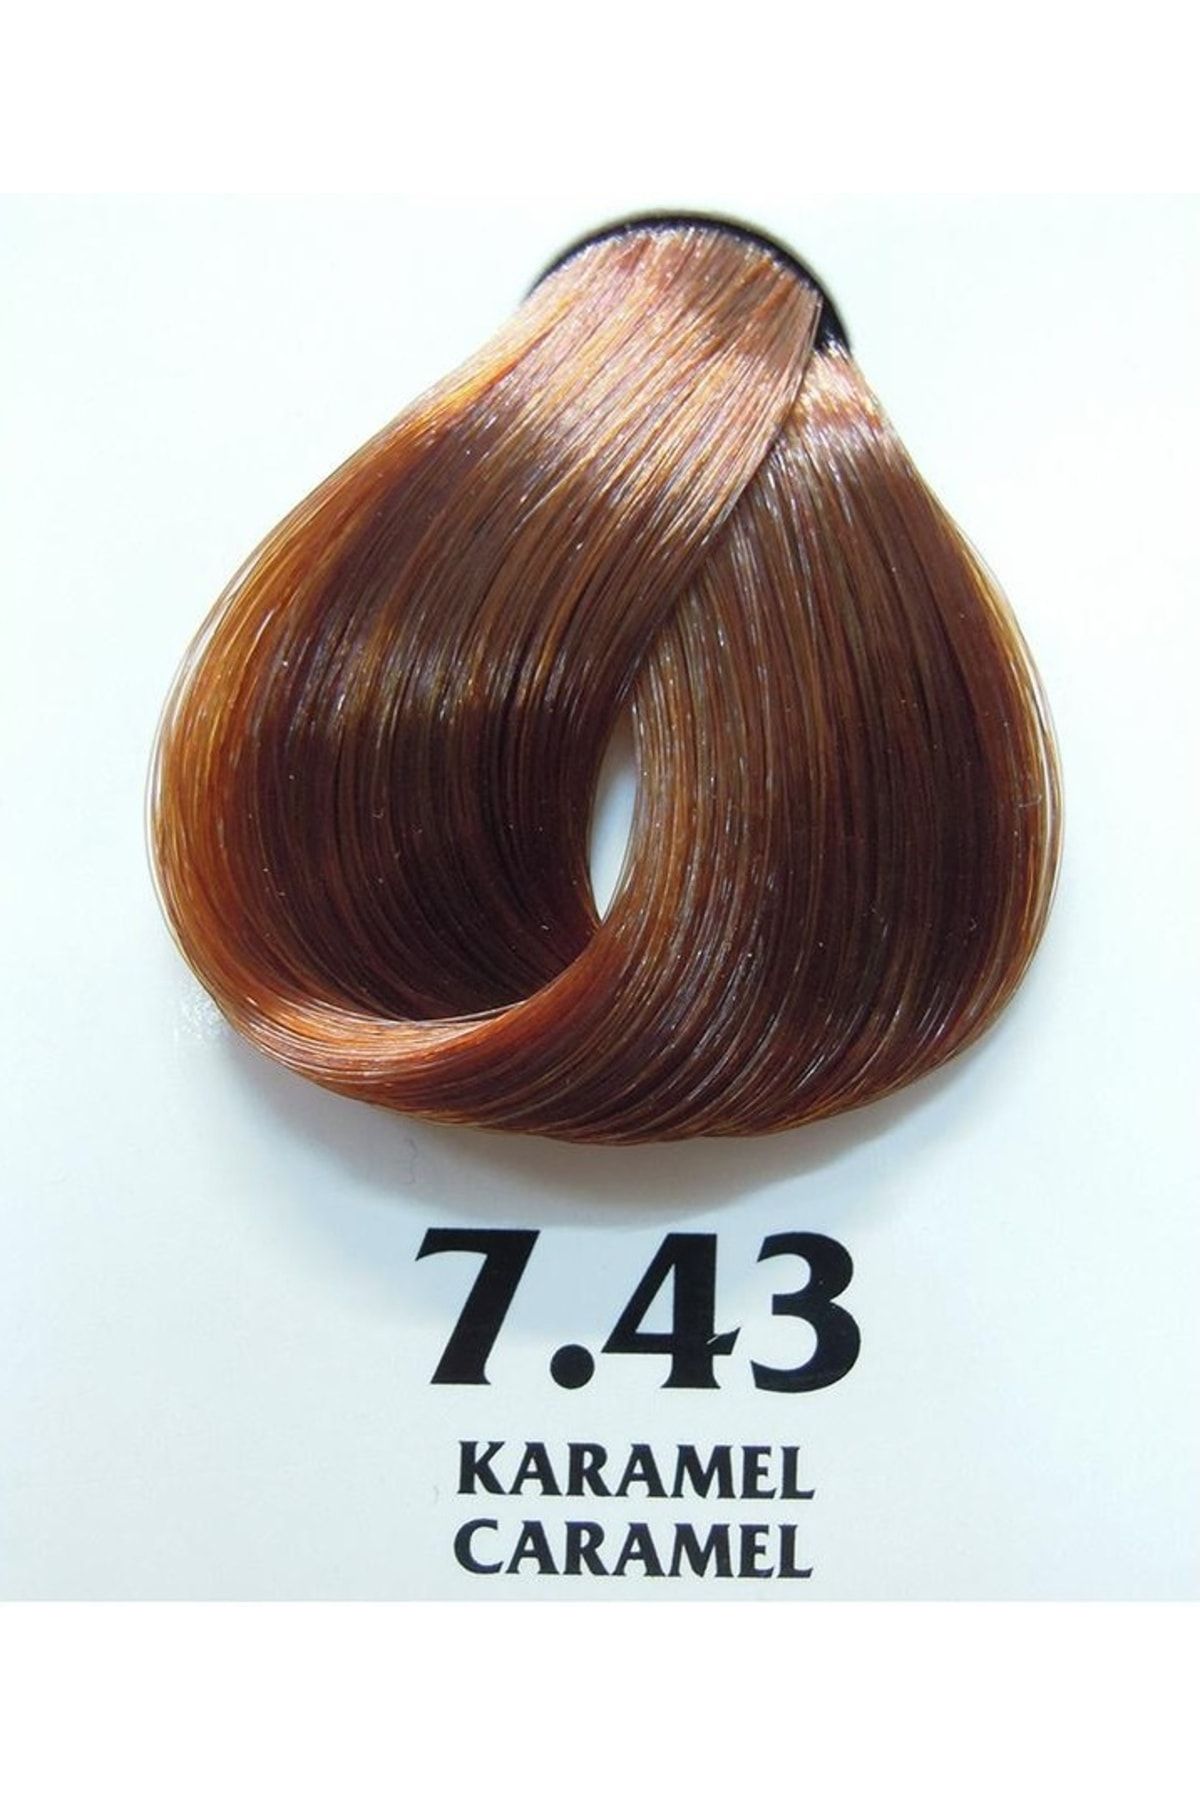 Clemency Farmavita Saç Boyası Karamel 7.43 60gr.